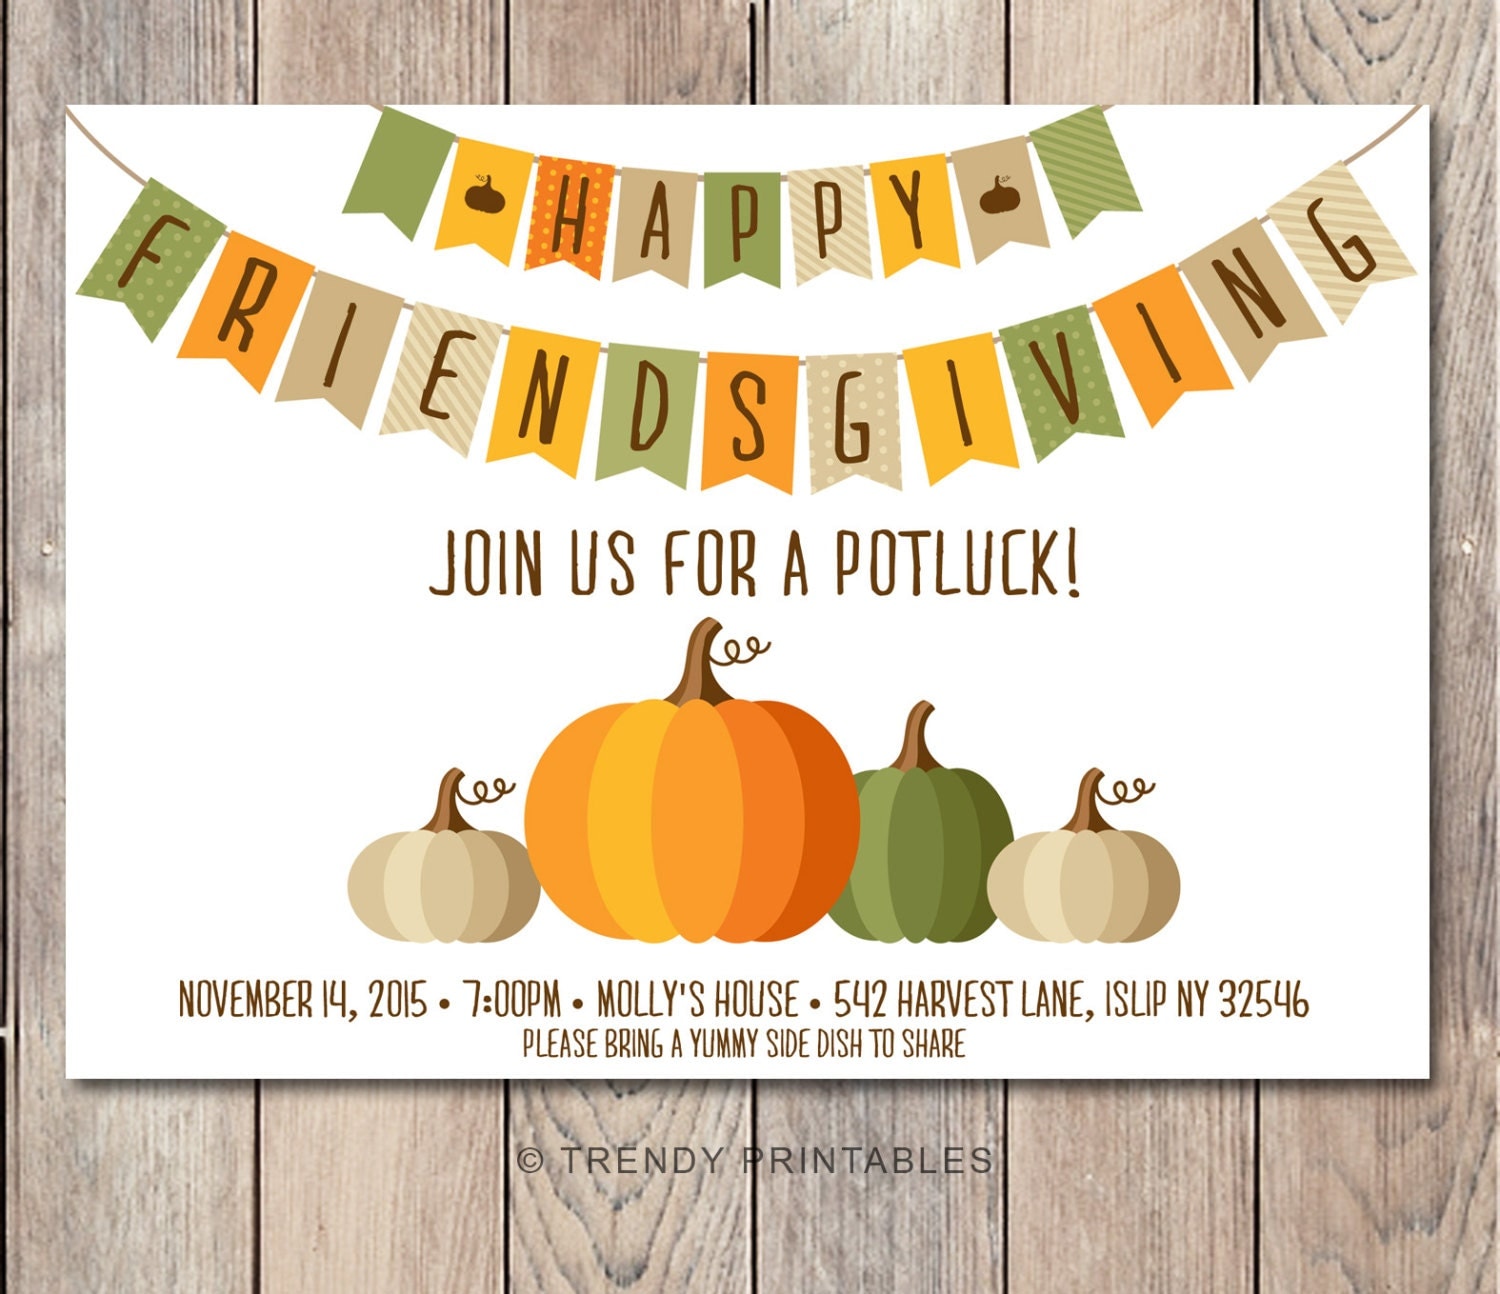 potluck-invitation-friendsgiving-thanksgiving-invitation